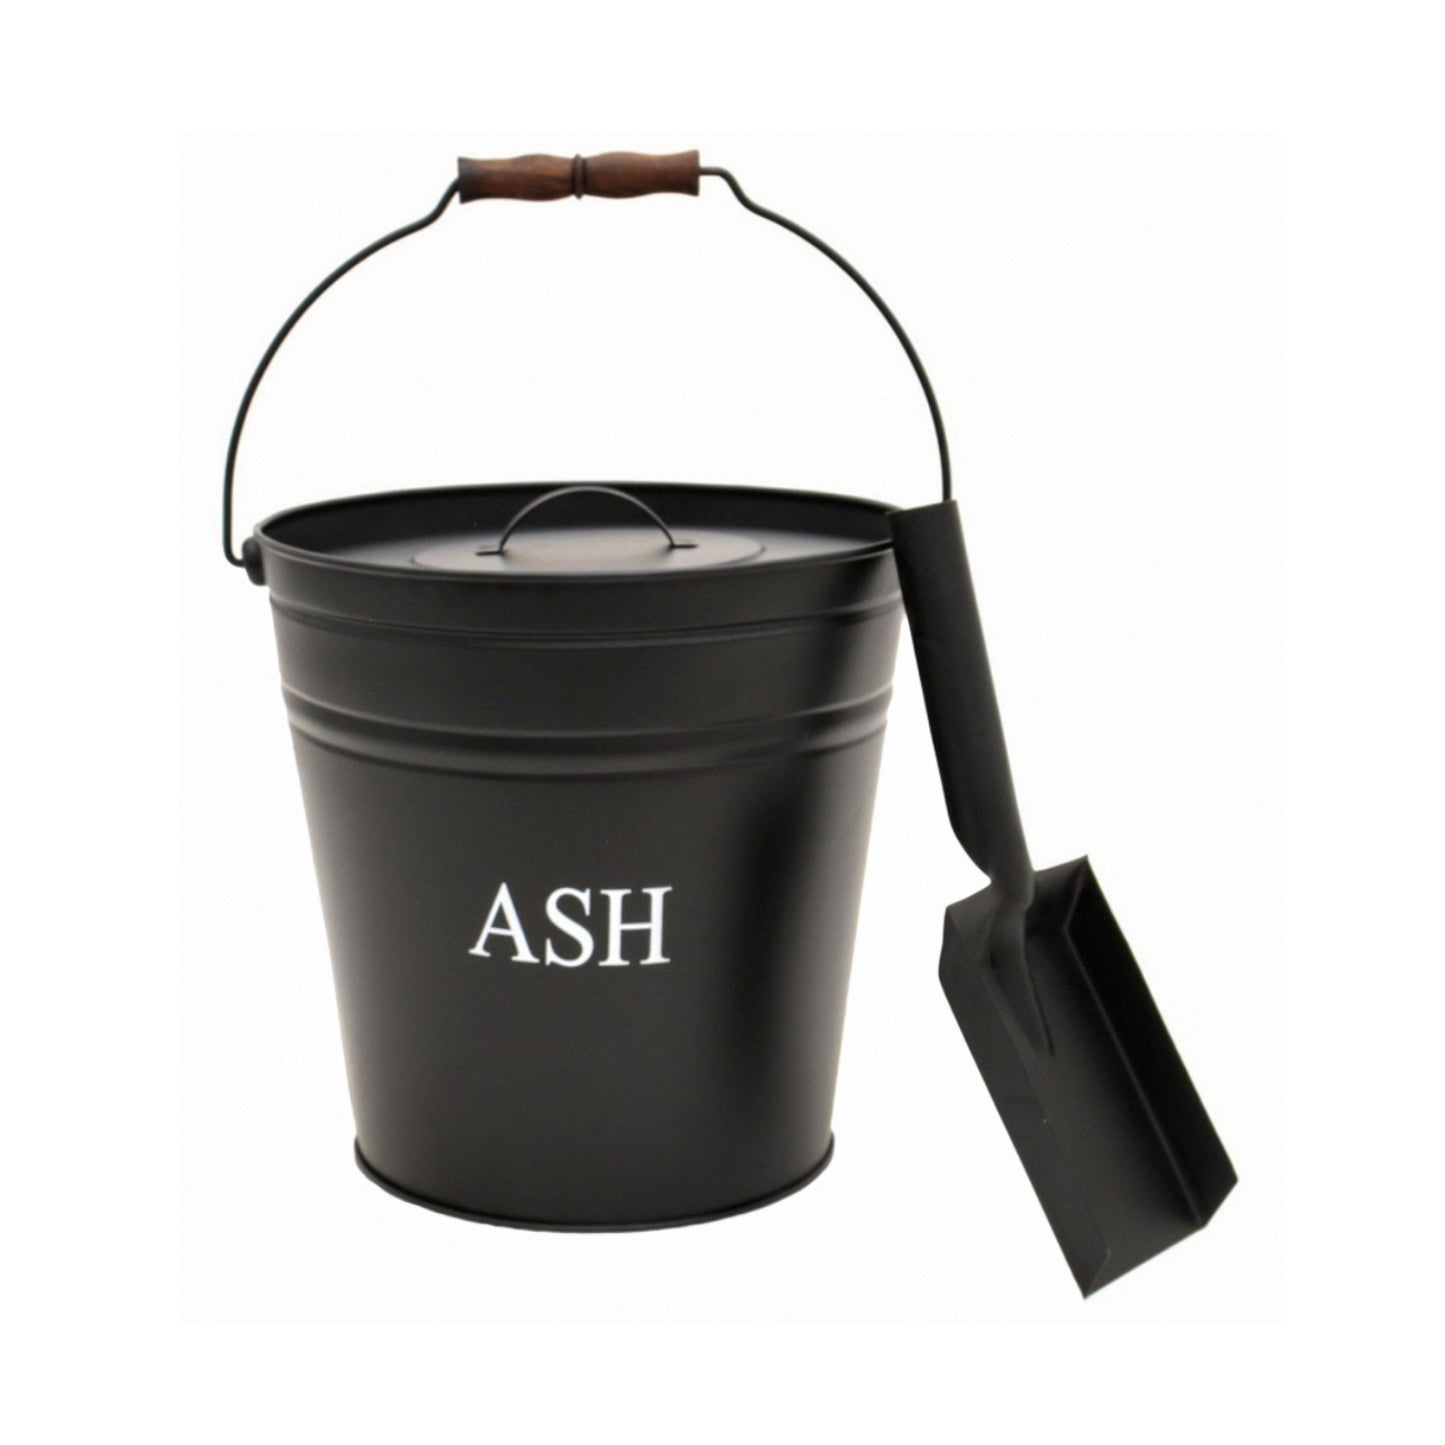 Black Ash Bucket by Ivyline